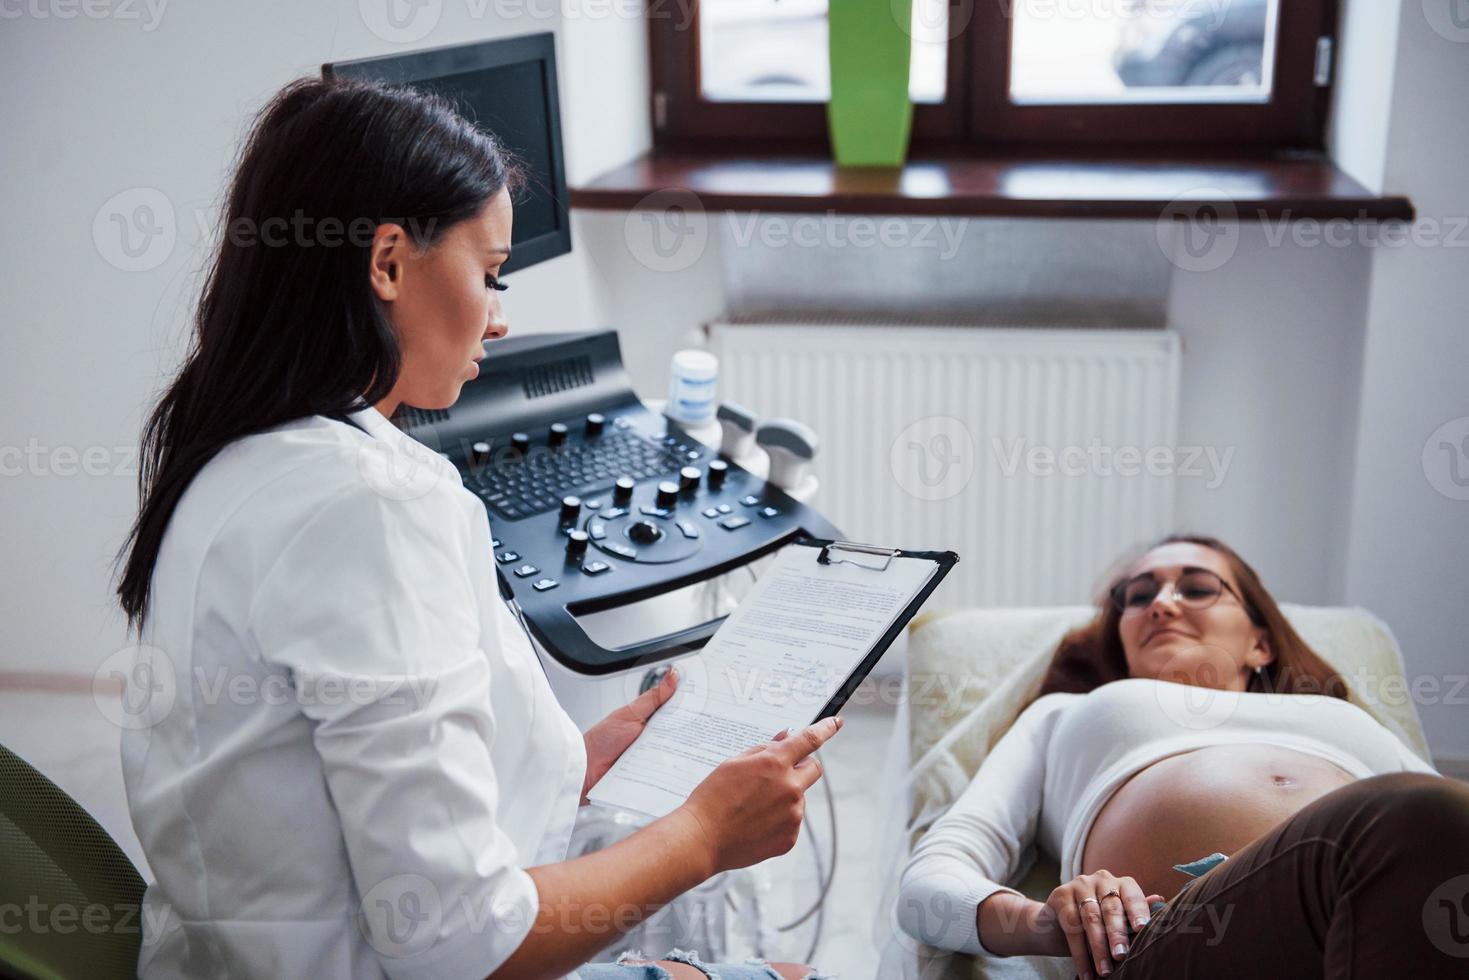 doctora habla sobre los resultados de la ecografía para una mujer embarazada en el hospital foto